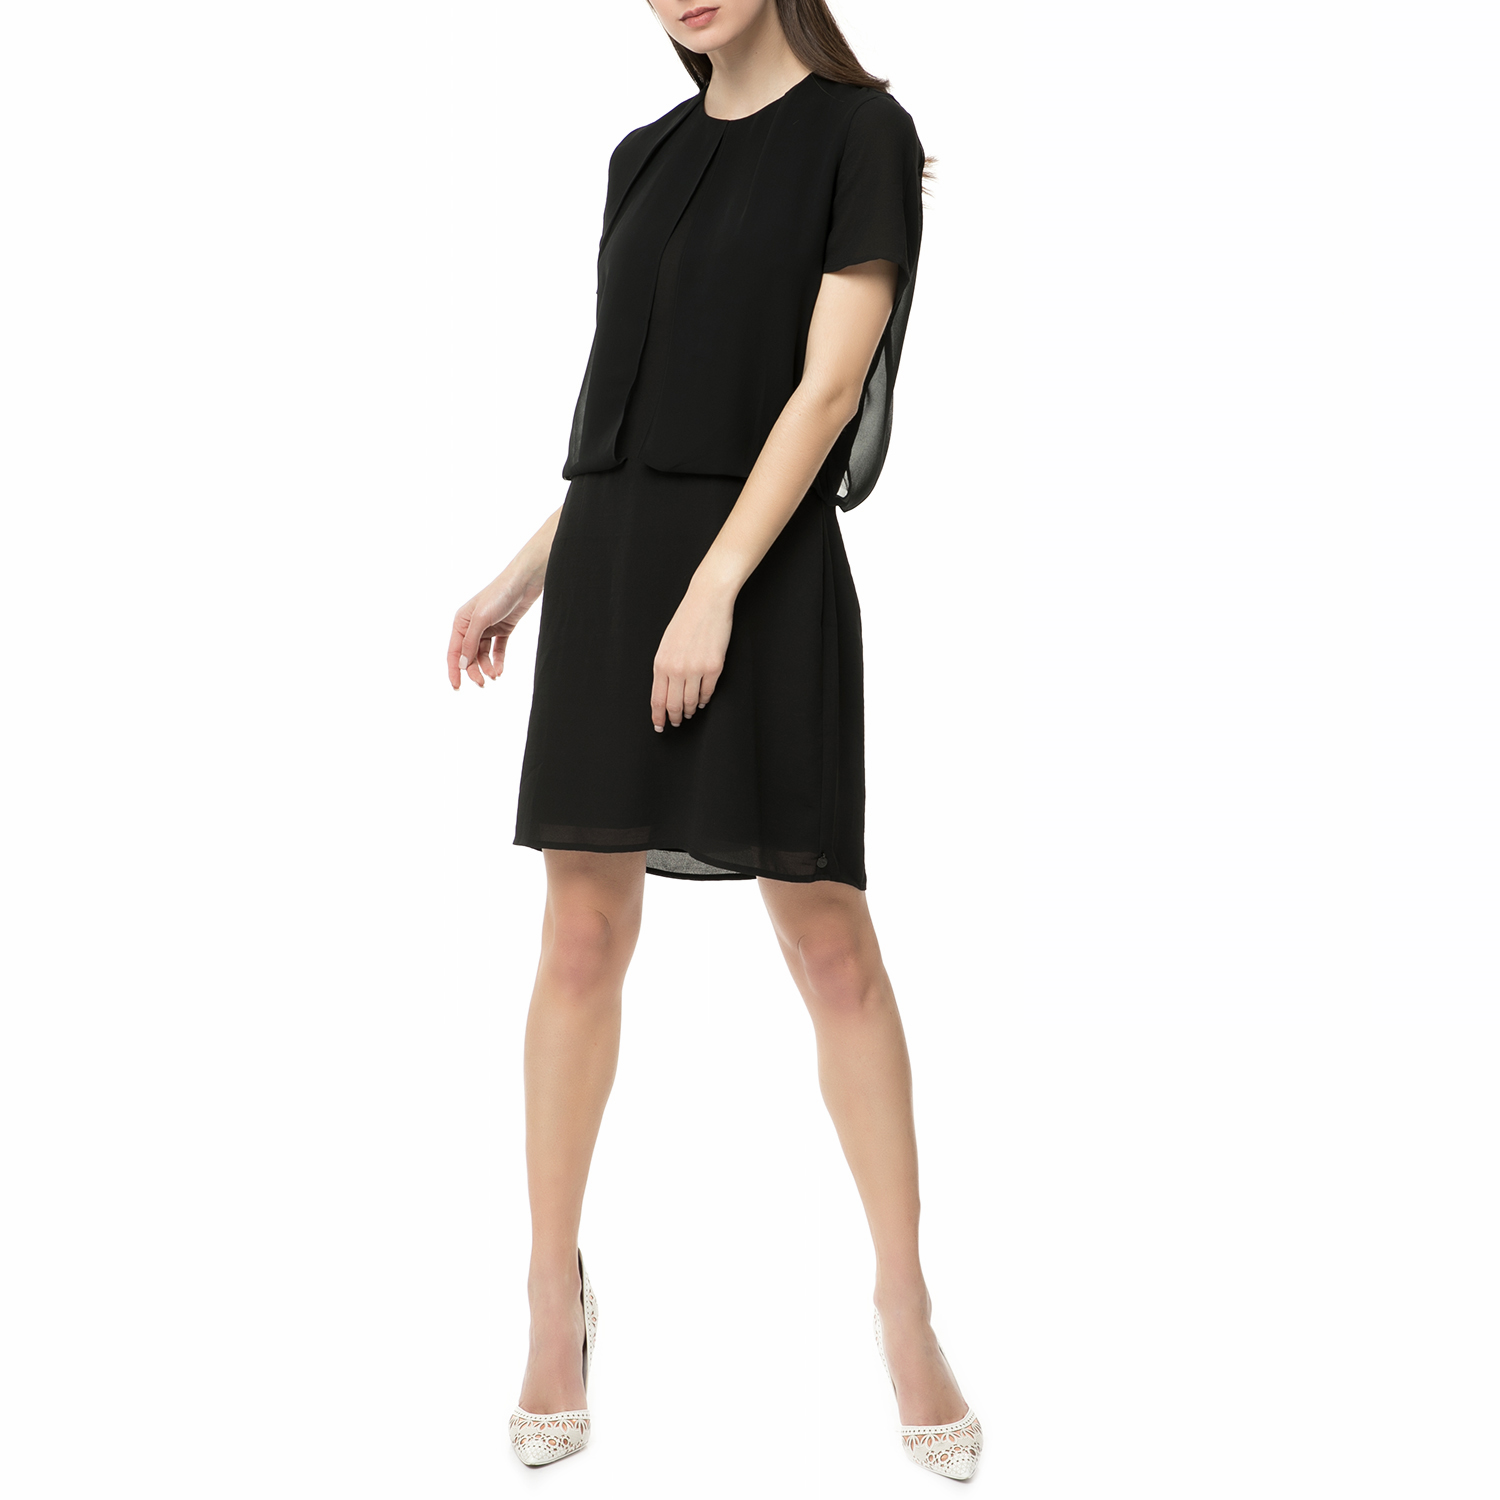 Γυναικεία/Ρούχα/Φορέματα/Μίνι SCOTCH & SODA - Γυναικείο μίνι φόρεμα Scotch & Soda Chic dress with sheer layers μαύρο